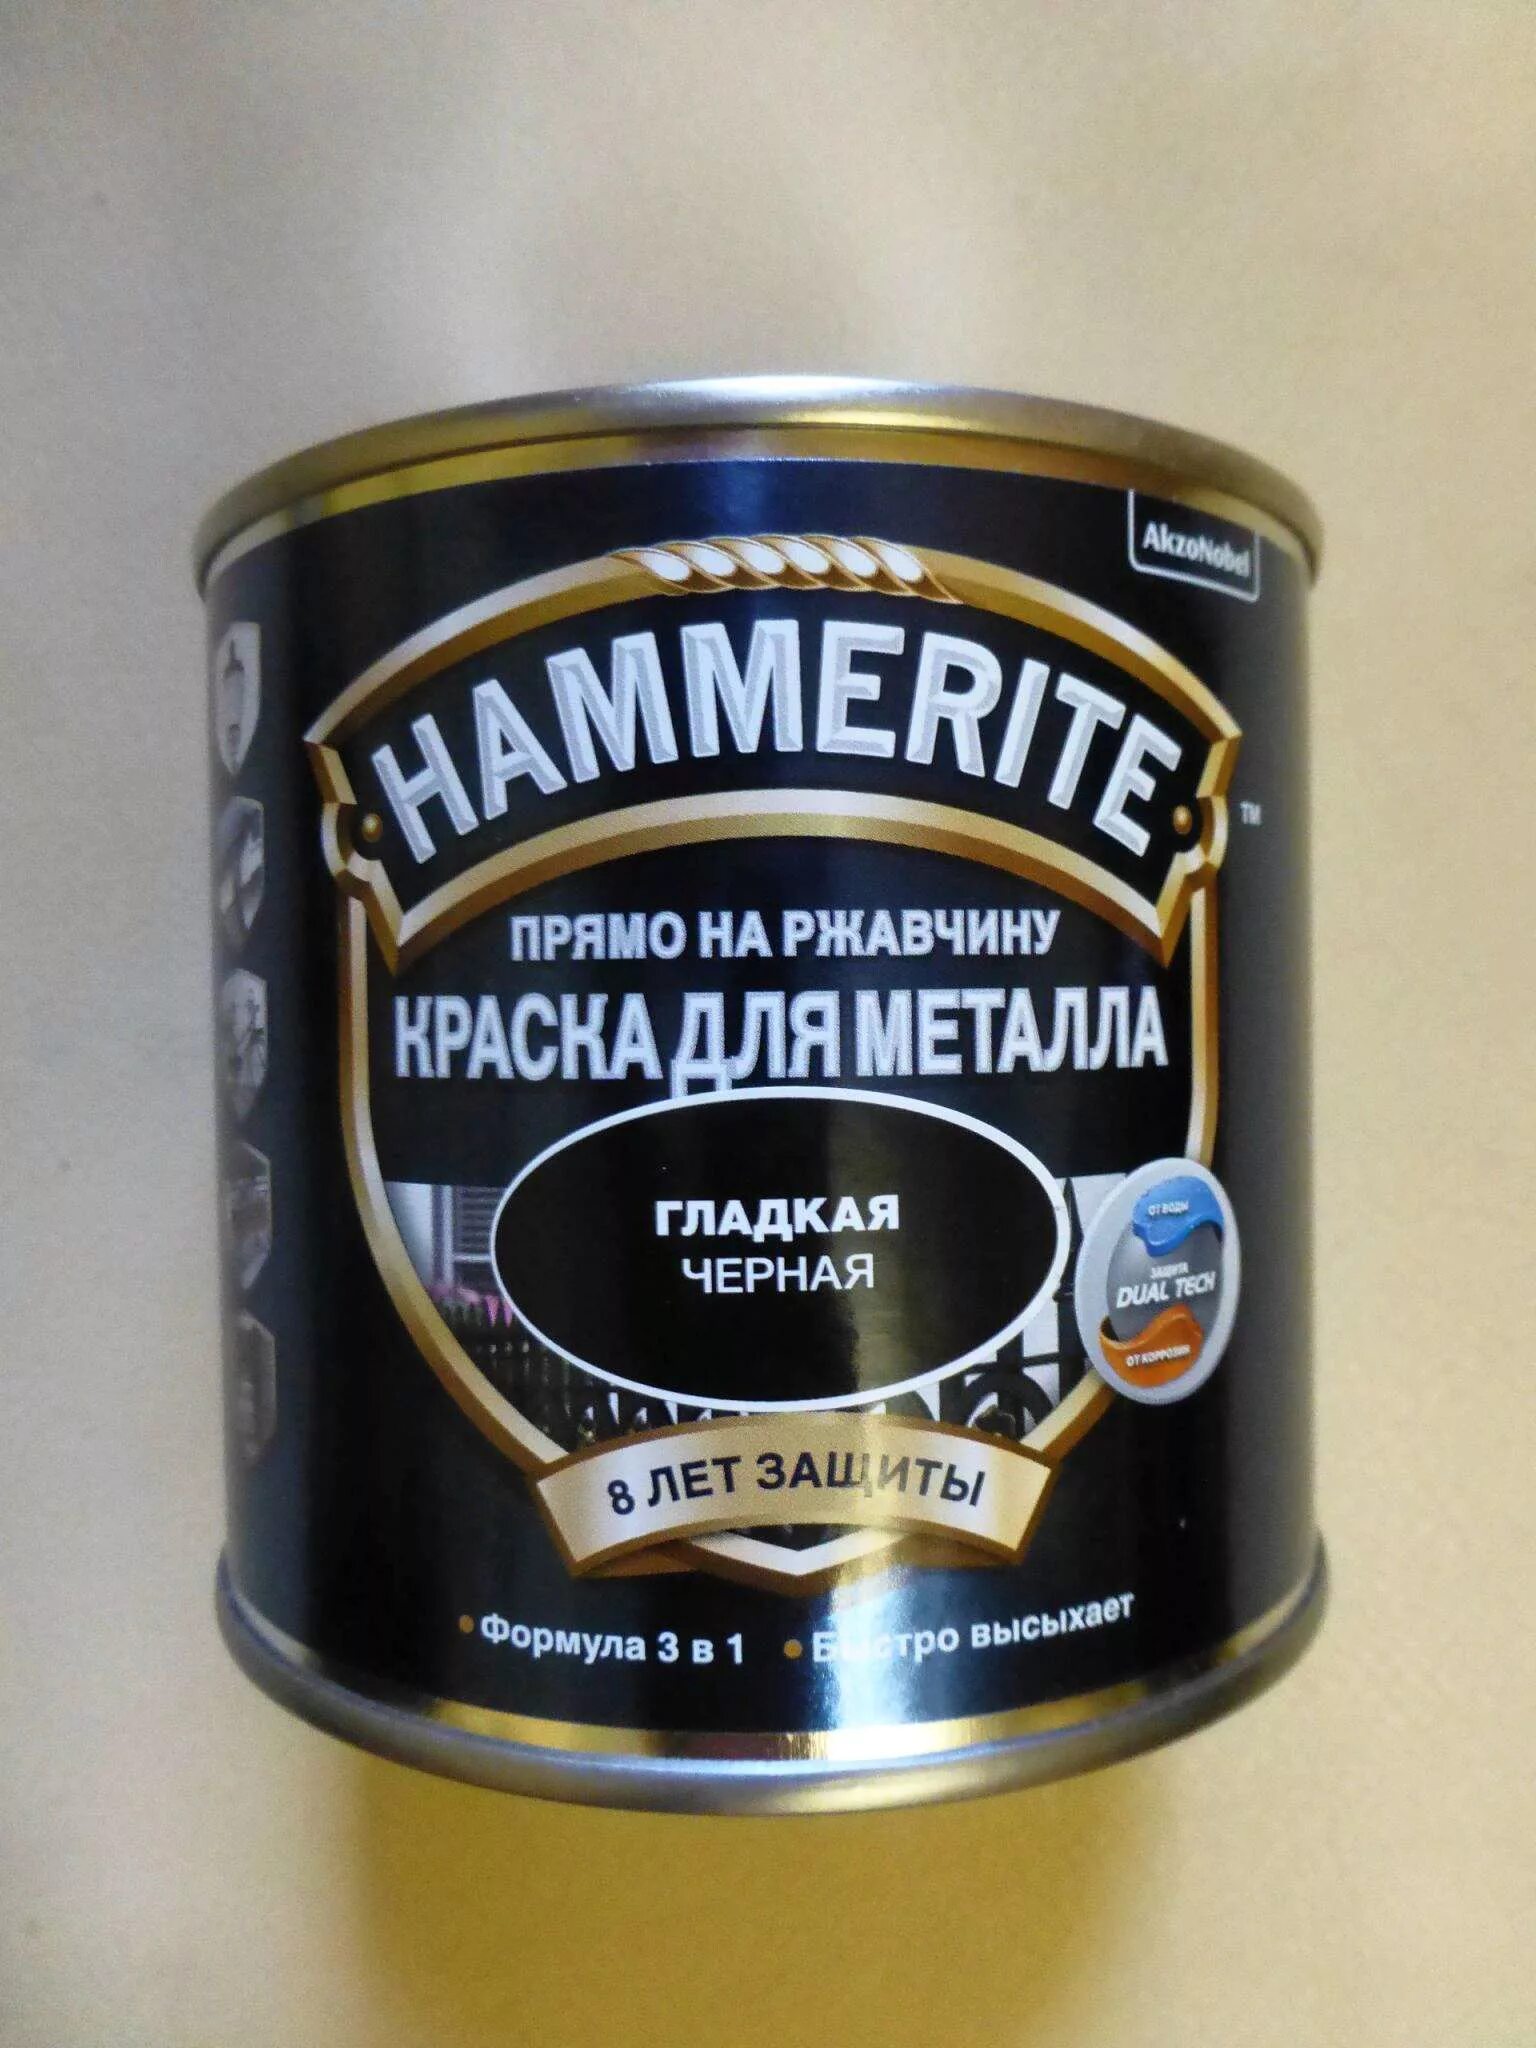 Hammerite краска по металлу черная матовая. Хаммерайт термостойкая краска. Hammerite гладкая черная. Краска по металлу Хамерайт матовая черная.